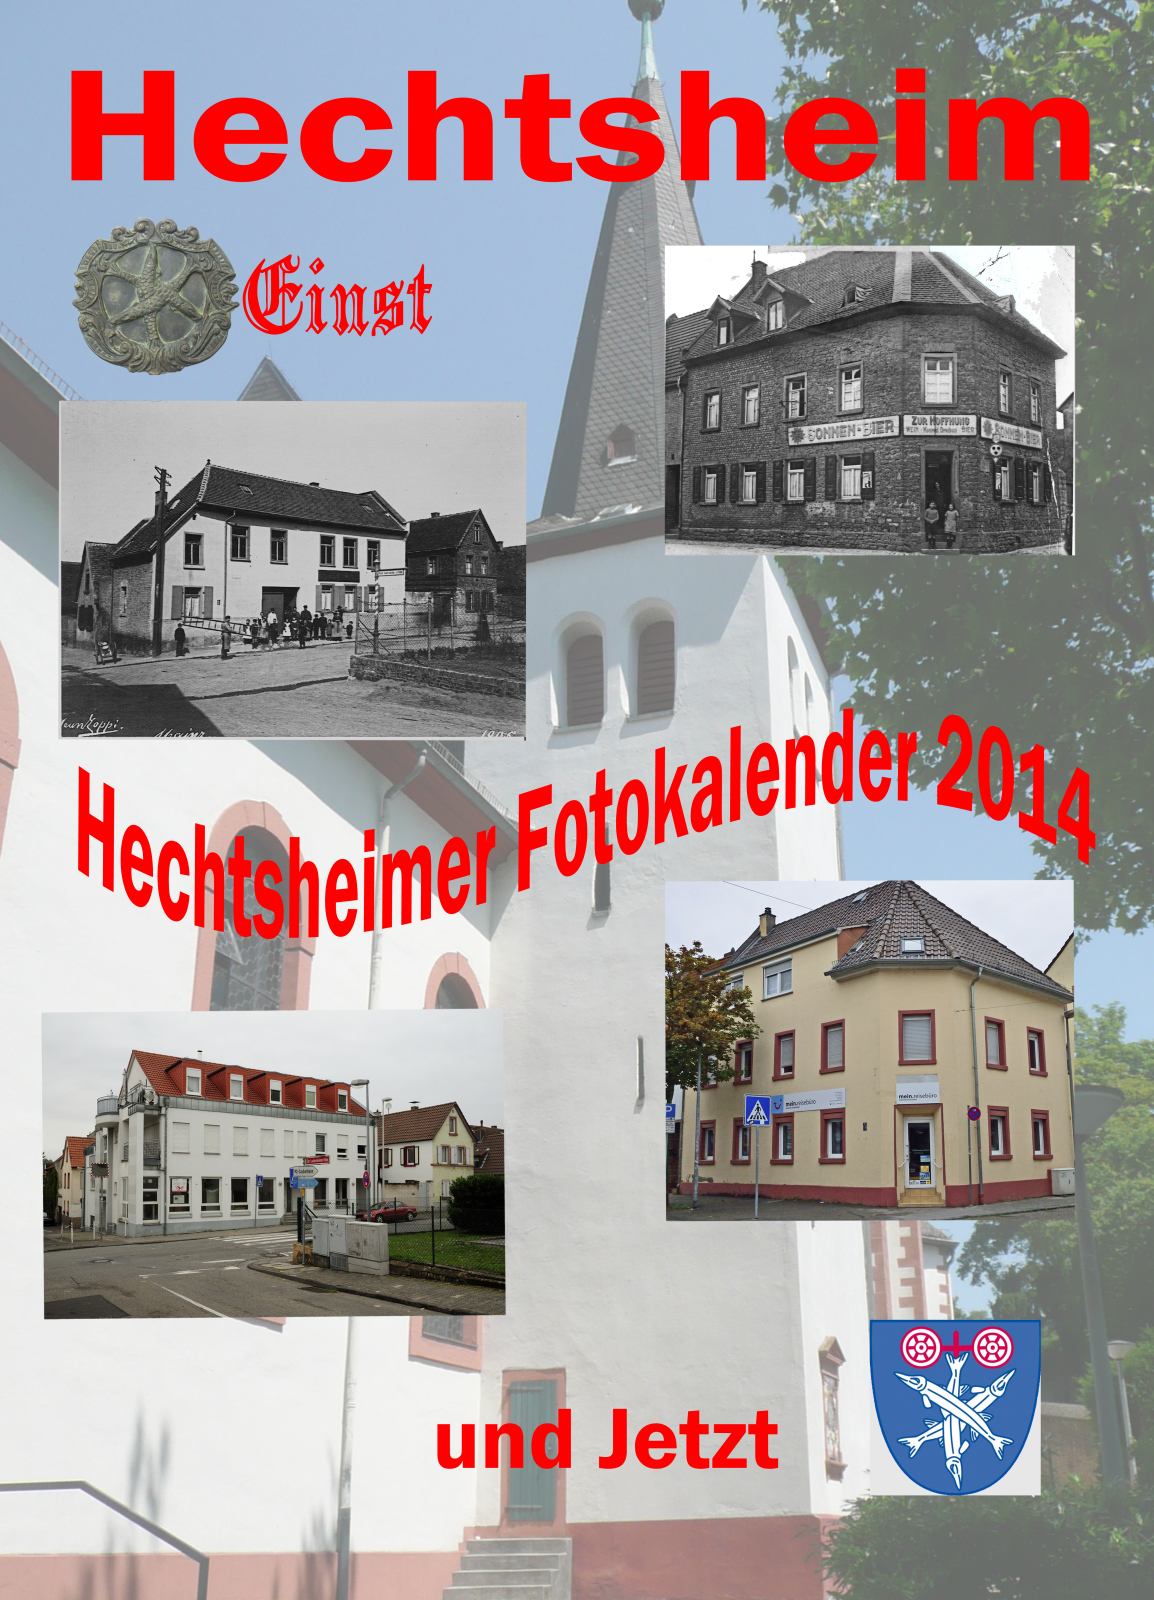 FotoclKalender (c) KAB Hechtsheim